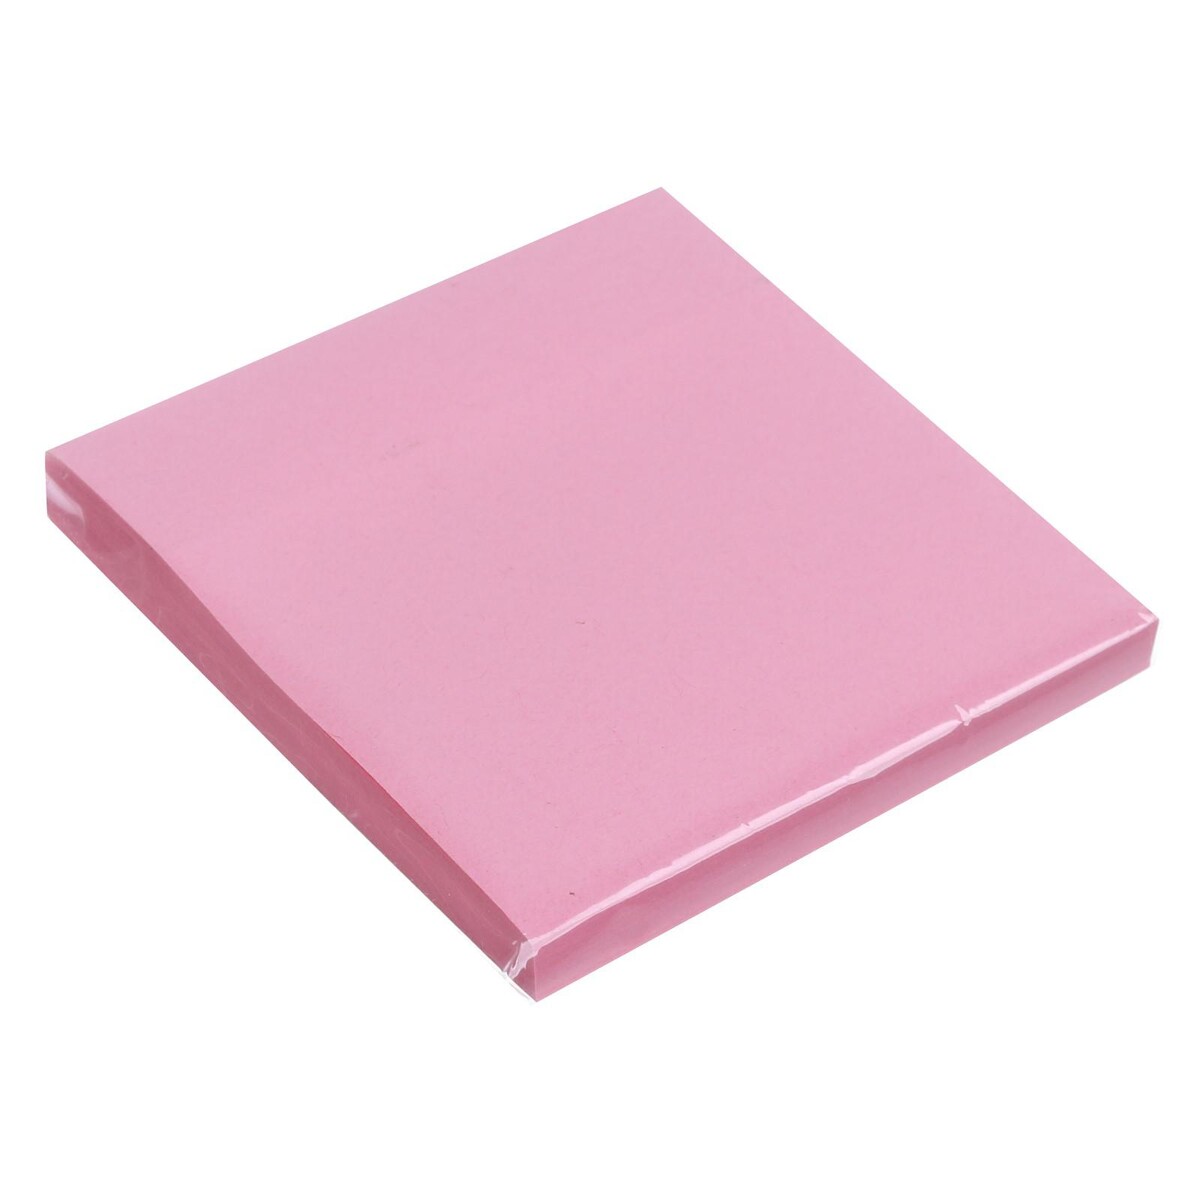 Блок с липким краем 76 мм х 76 мм, 80 листов, пастель, розовый блок с липким краем 76 мм х 76 мм 80 листов пастель розовый